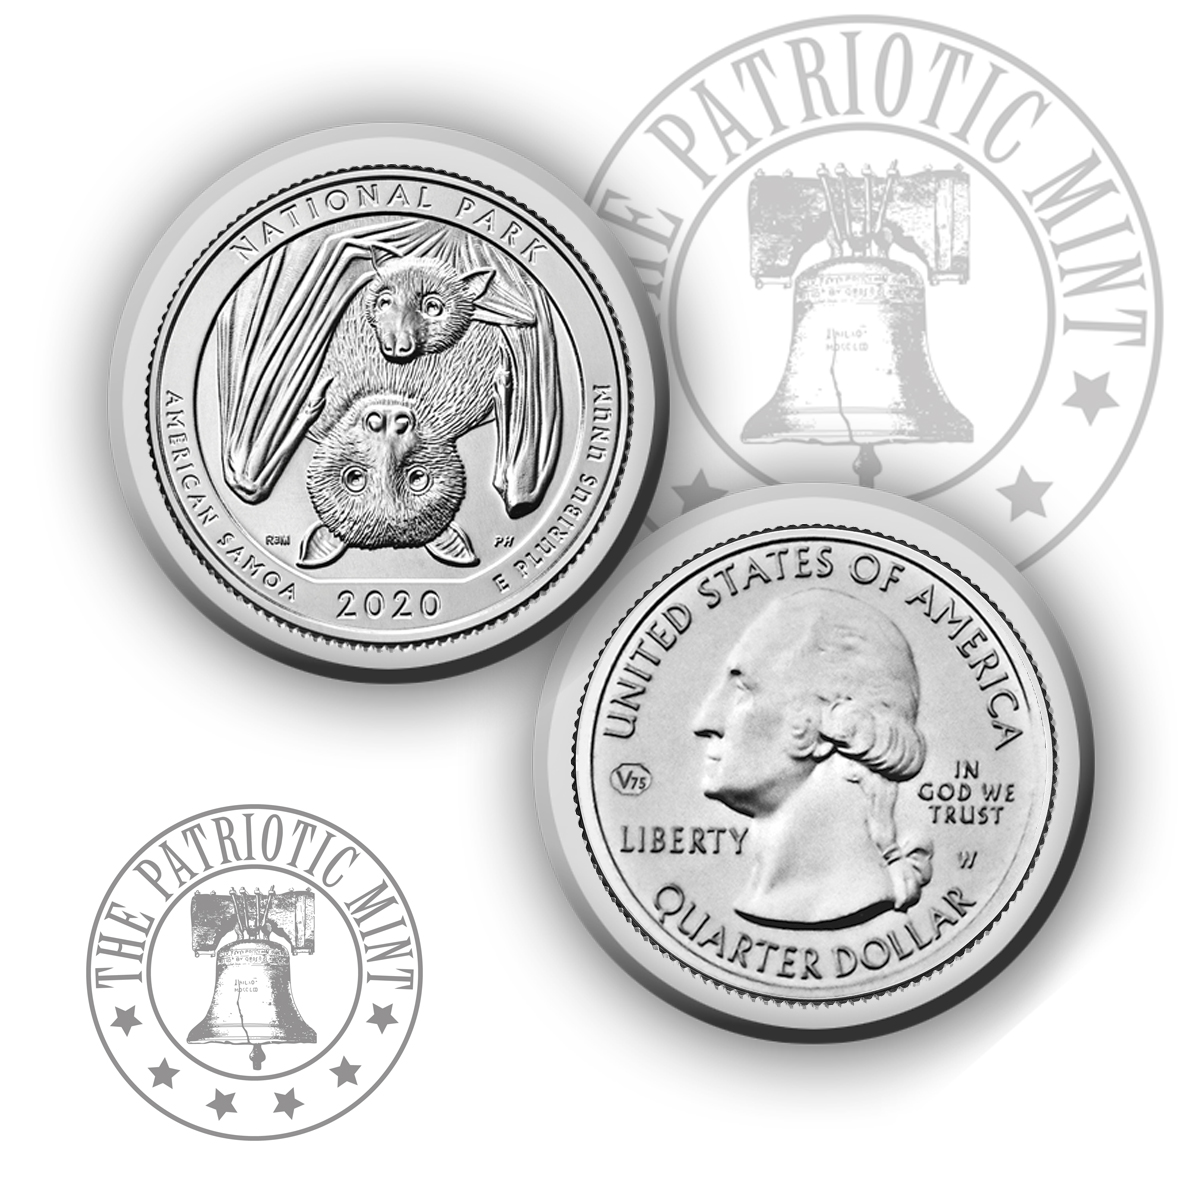 West Point Mint Quarters